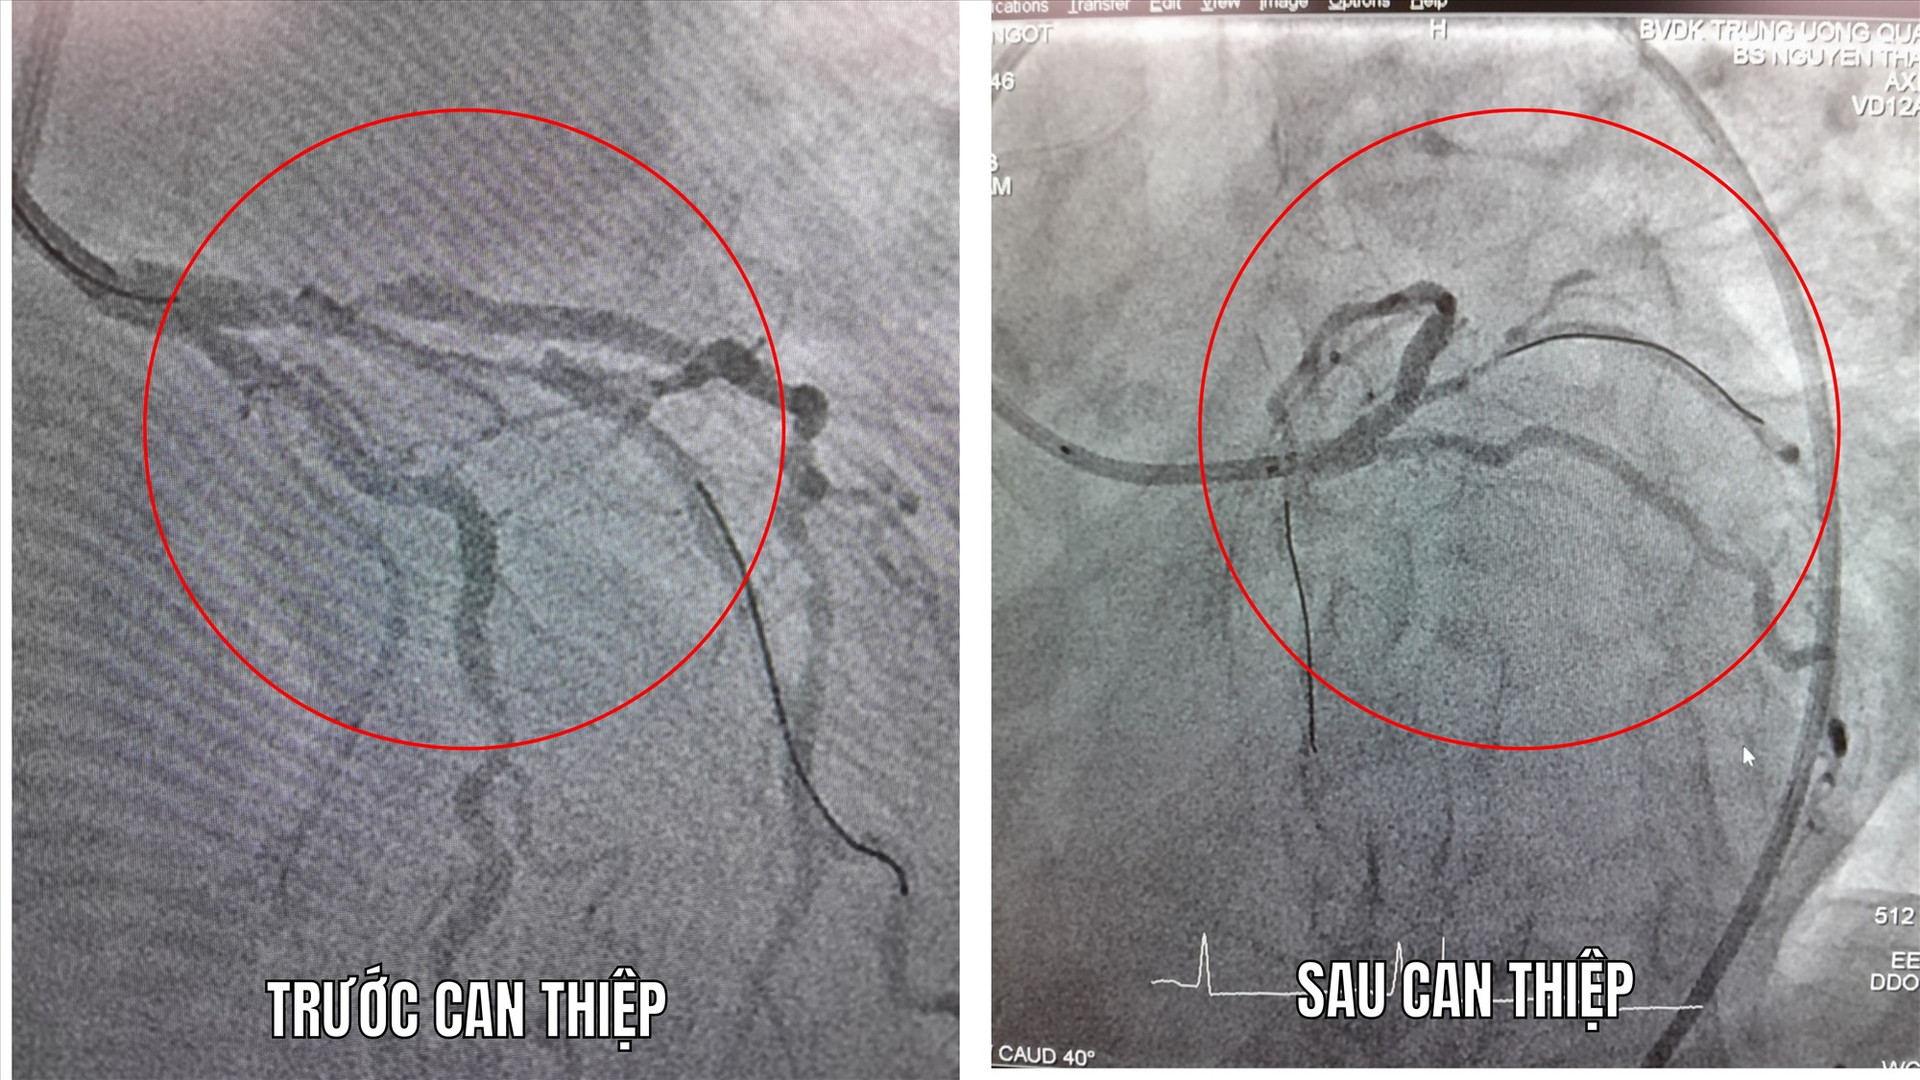 Hình ảnh mạch máu tim trước và sau can thiệp đặt 1 stent vào đoạn hẹp động mạch liên thất trước. Ảnh: BÙI HUÂN